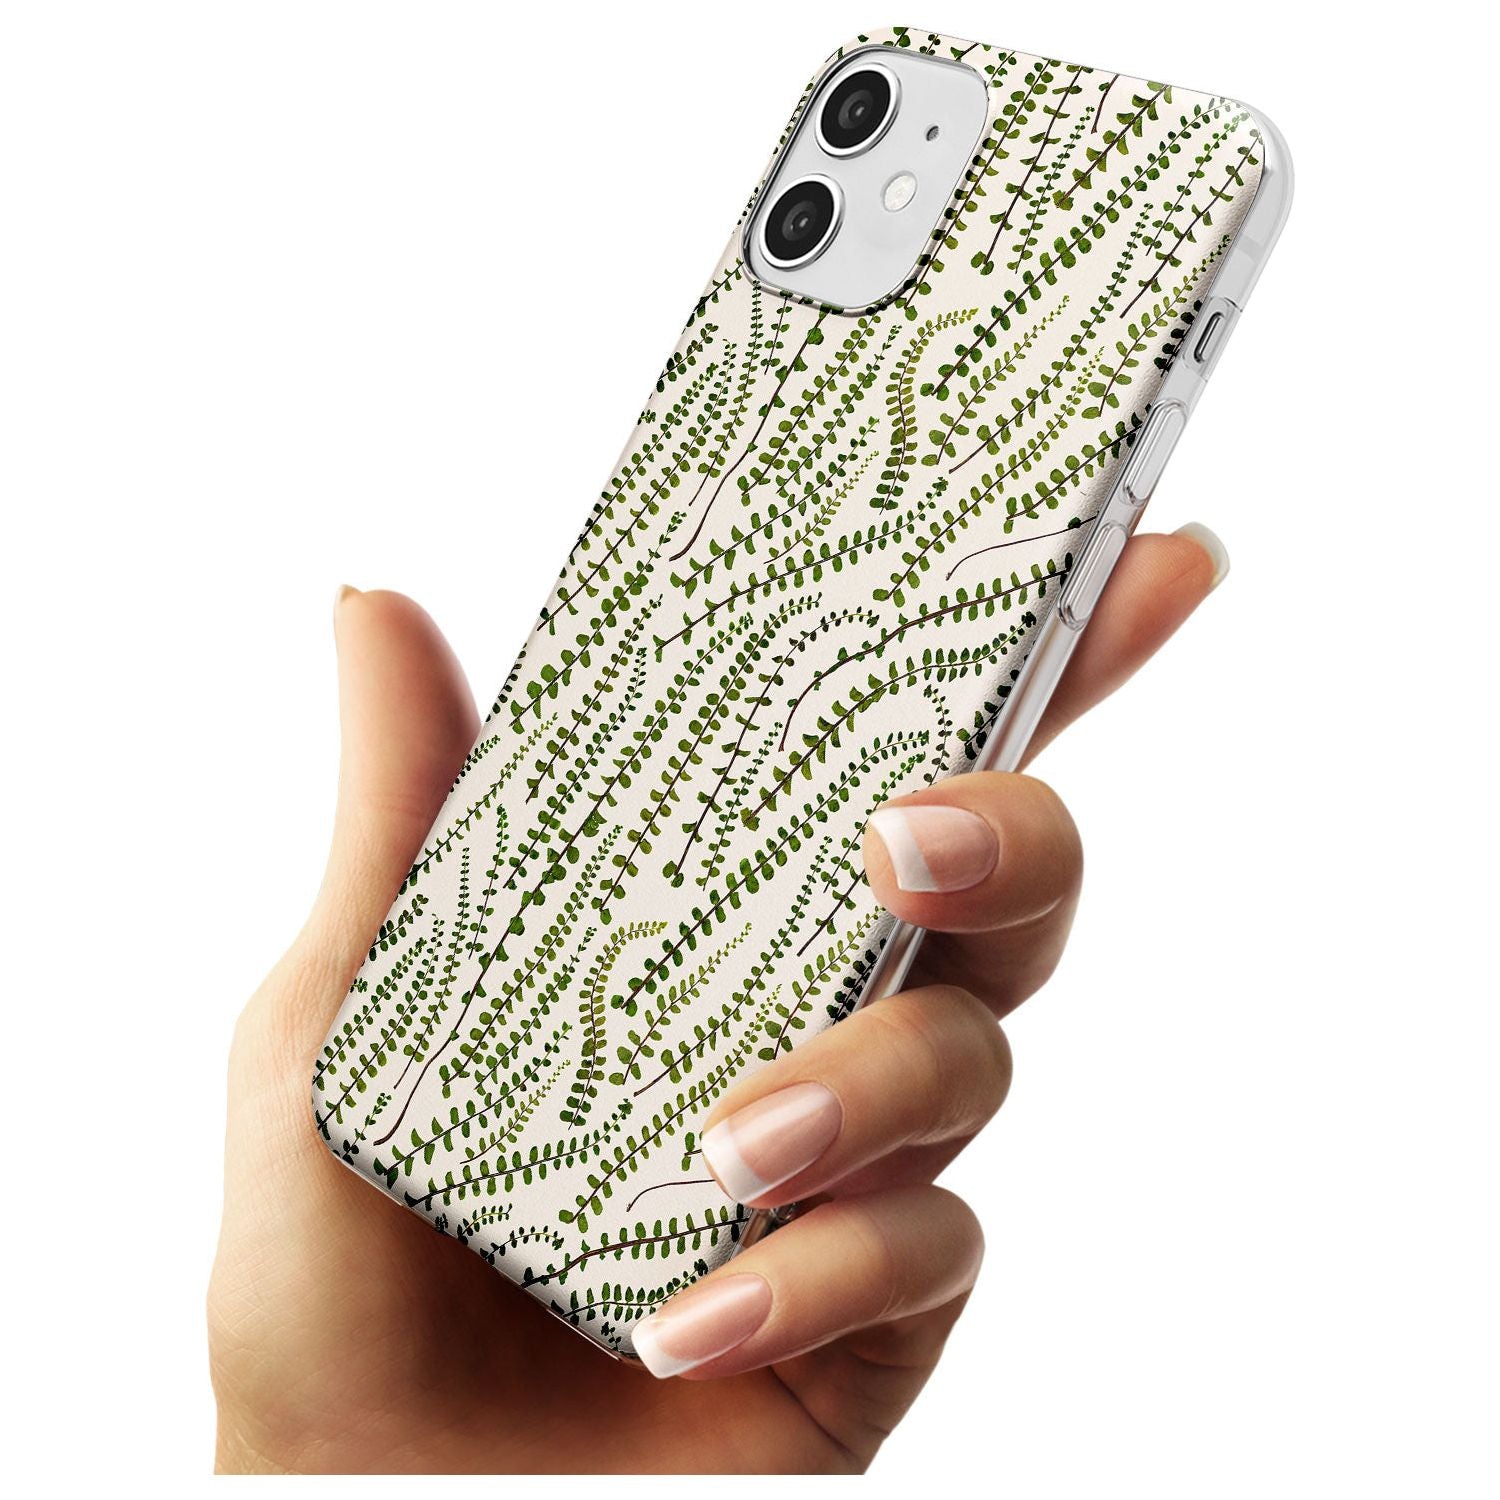 Fern Leaf Pattern Design - Cream Slim TPU Phone Case for iPhone 11